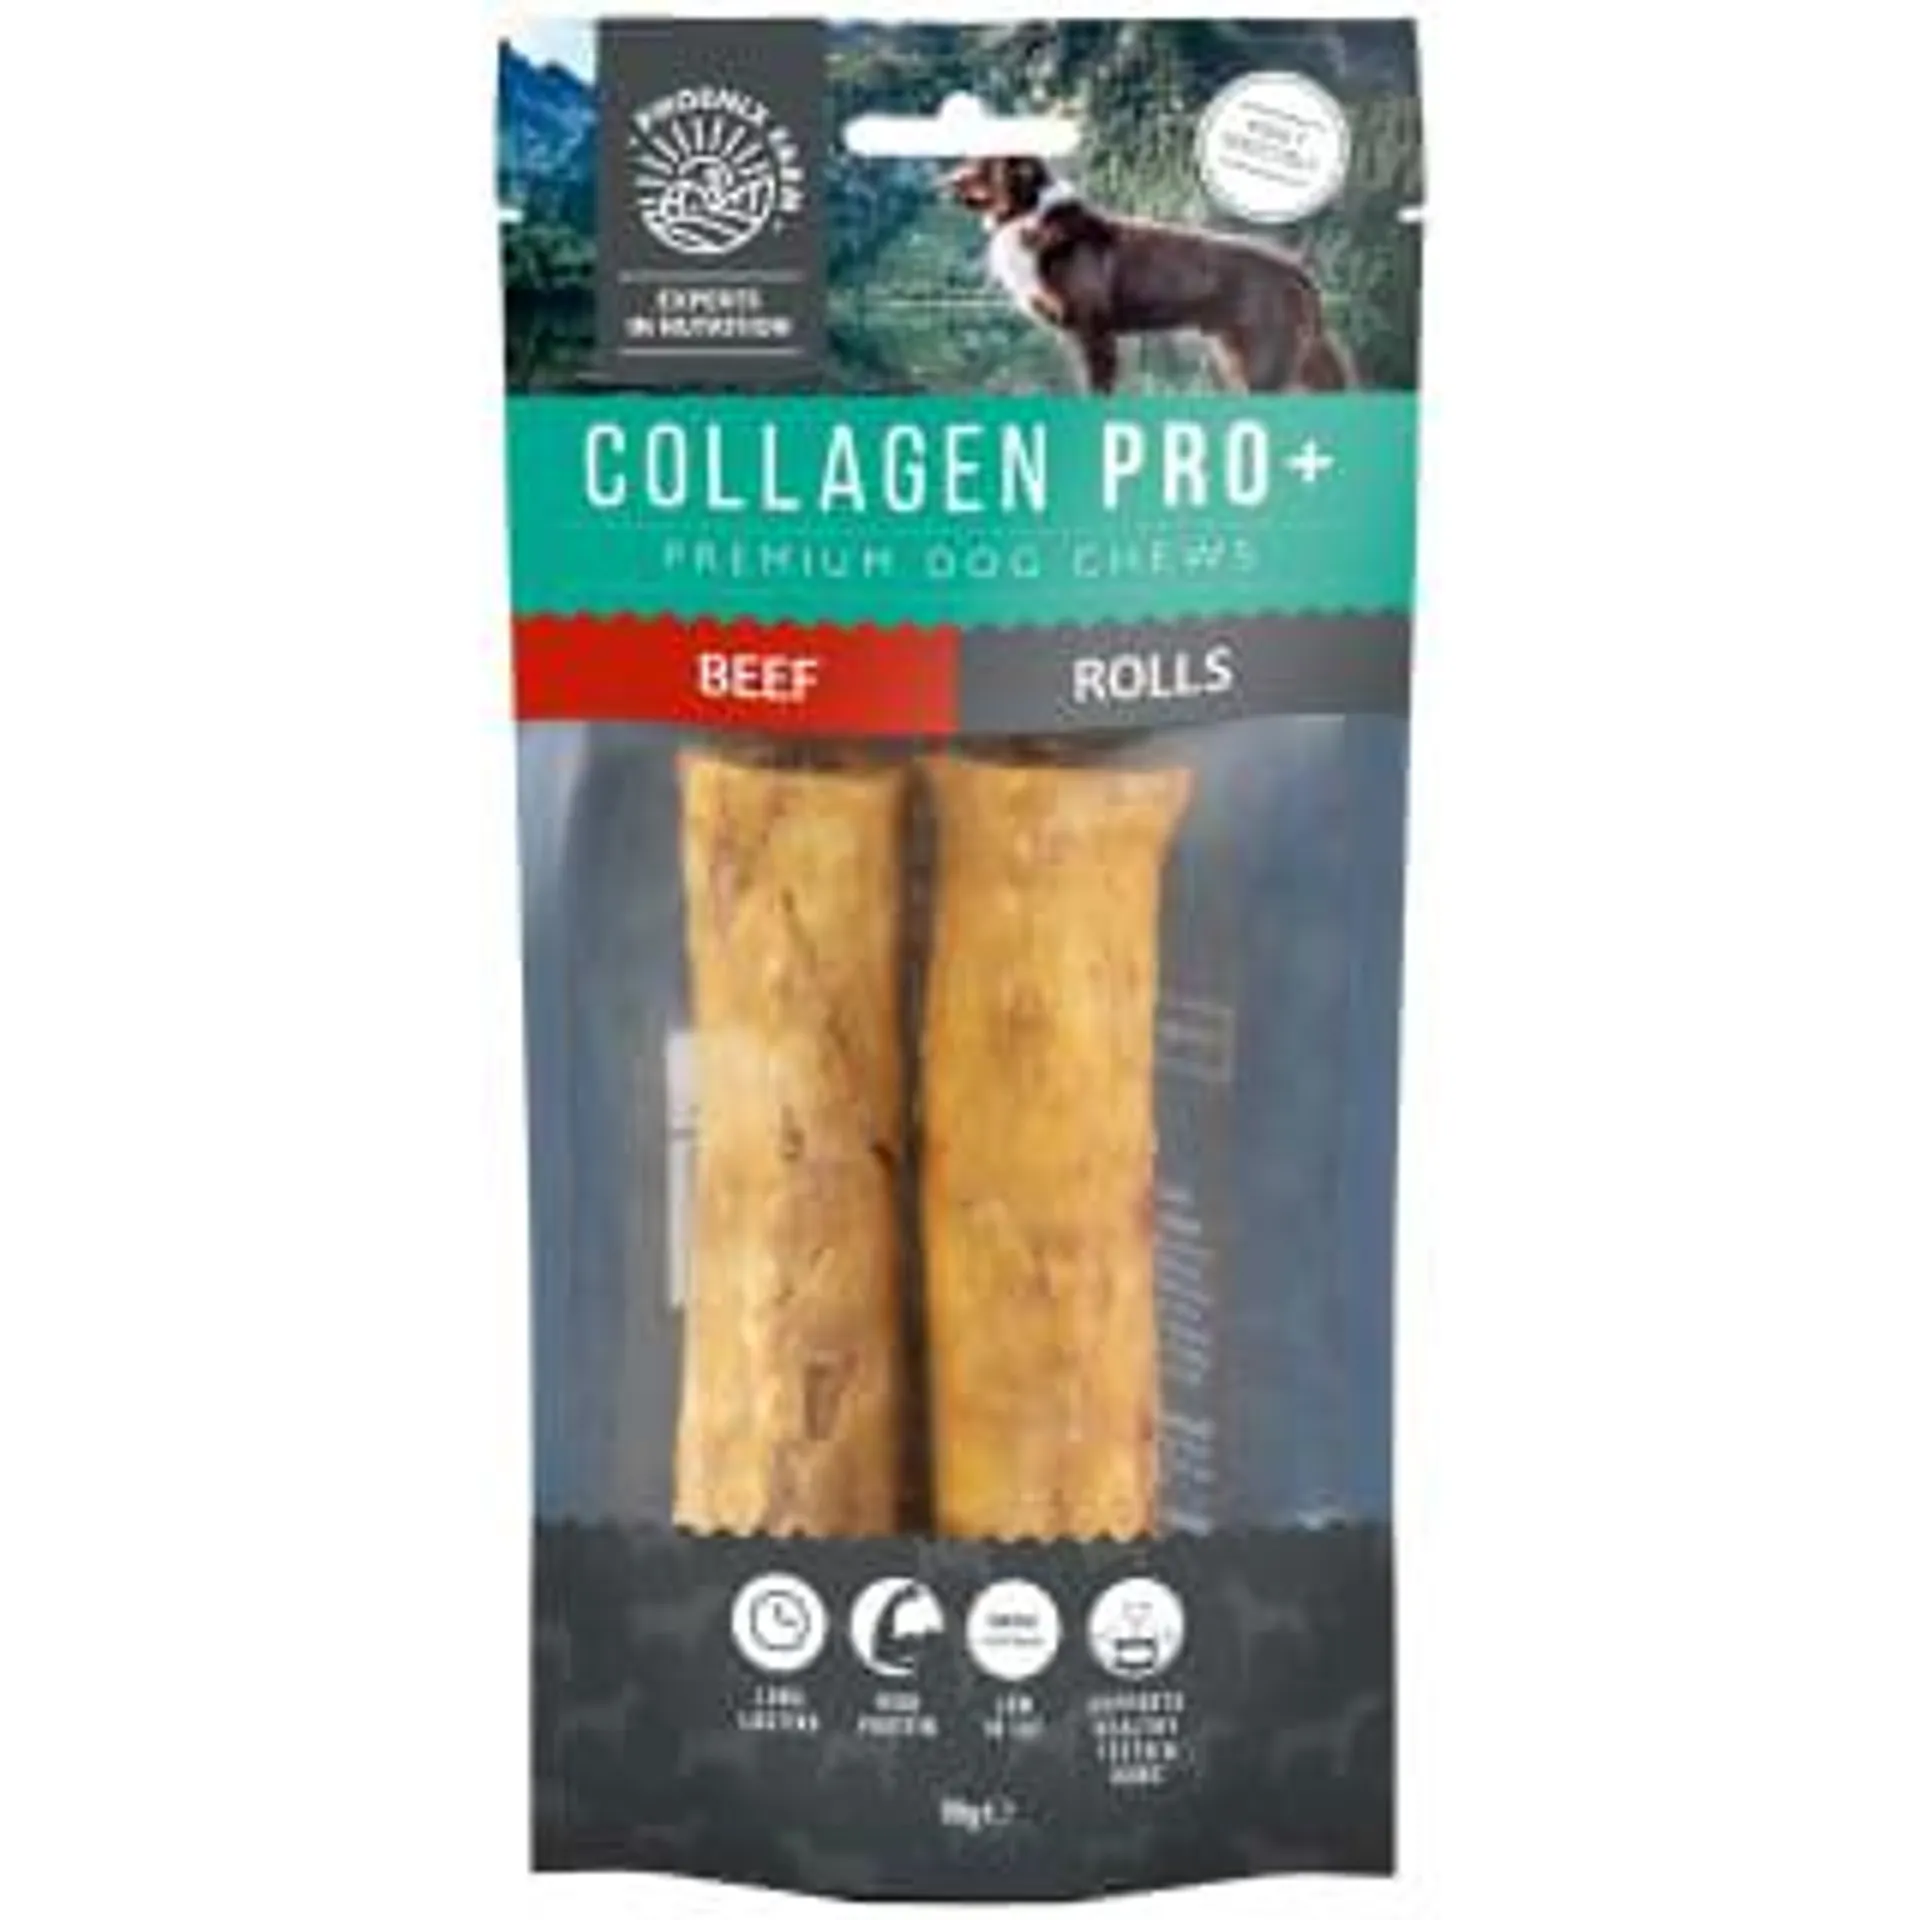 Collagen Pro+ Dog Chews 2pk - Beef Rolls